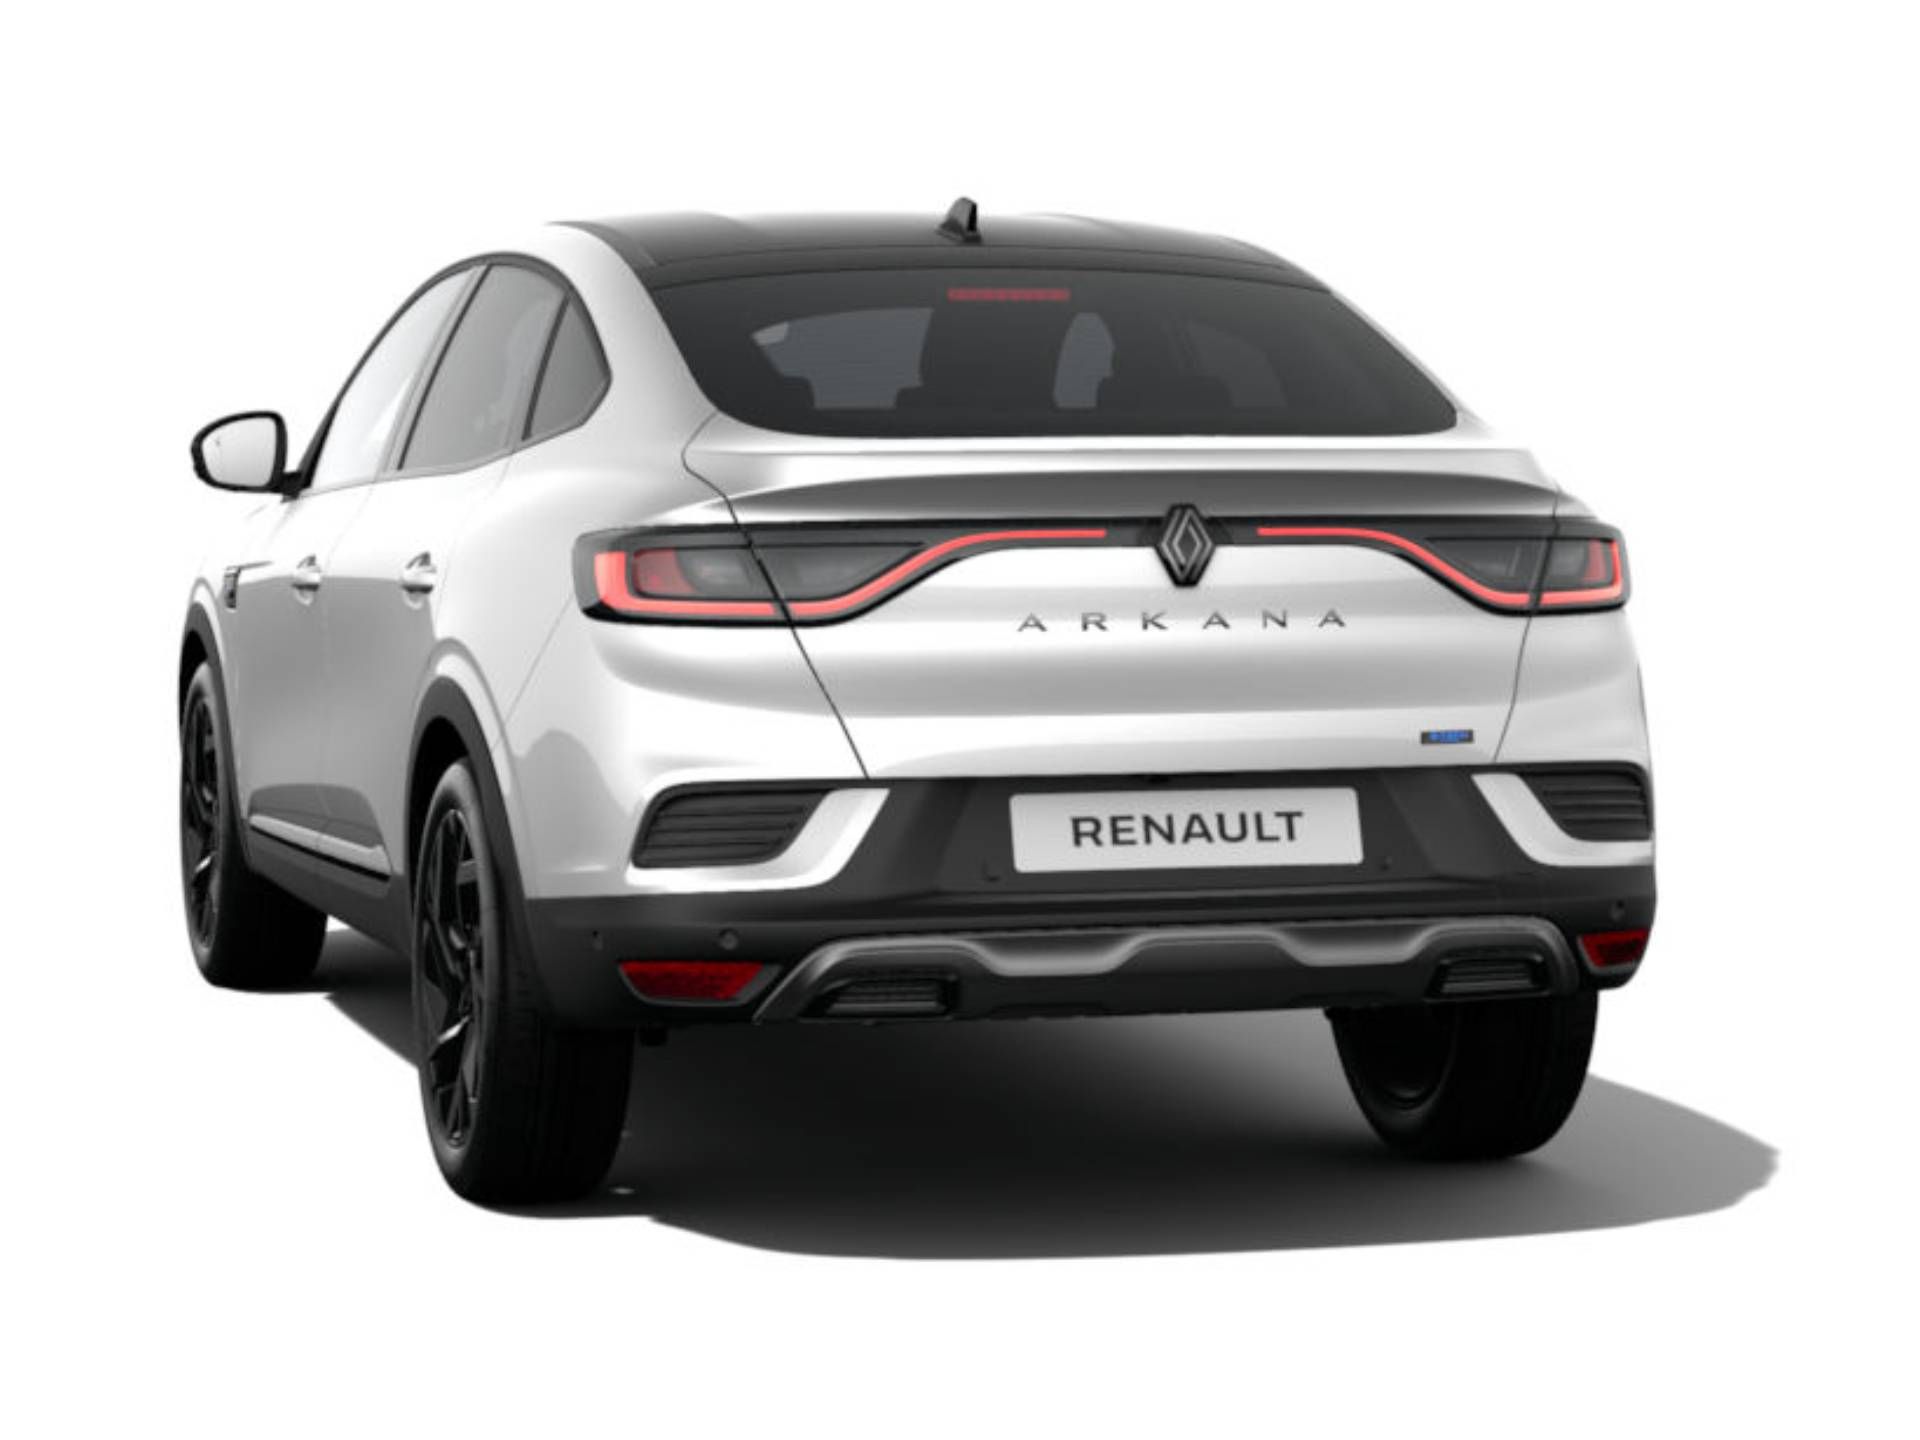 Precios y versiones - Arkana E-Tech full hybrid - Renault